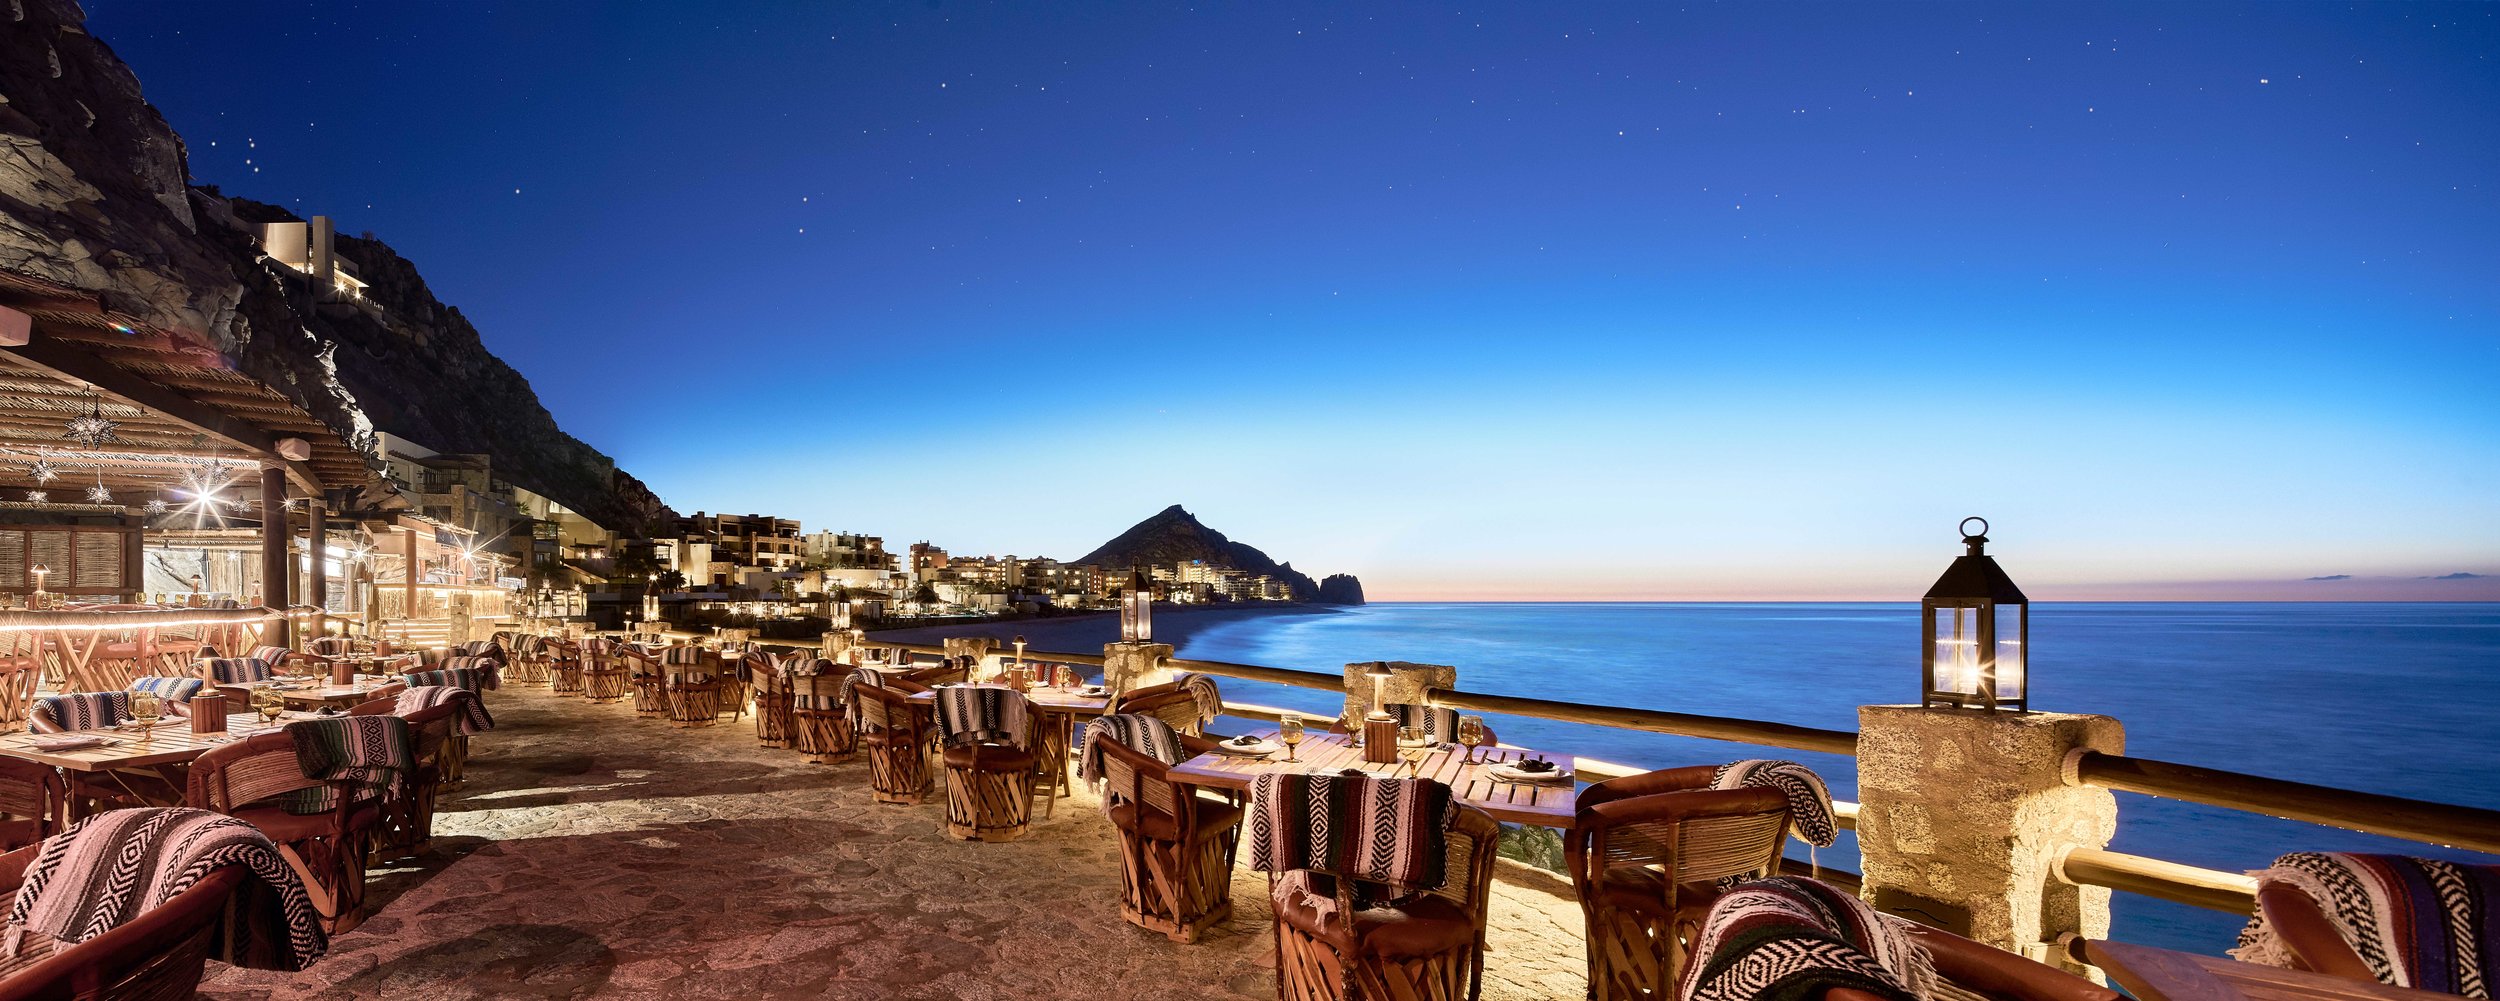 Resort at Pedregal - A Cabo Wedding Venue in Mexico